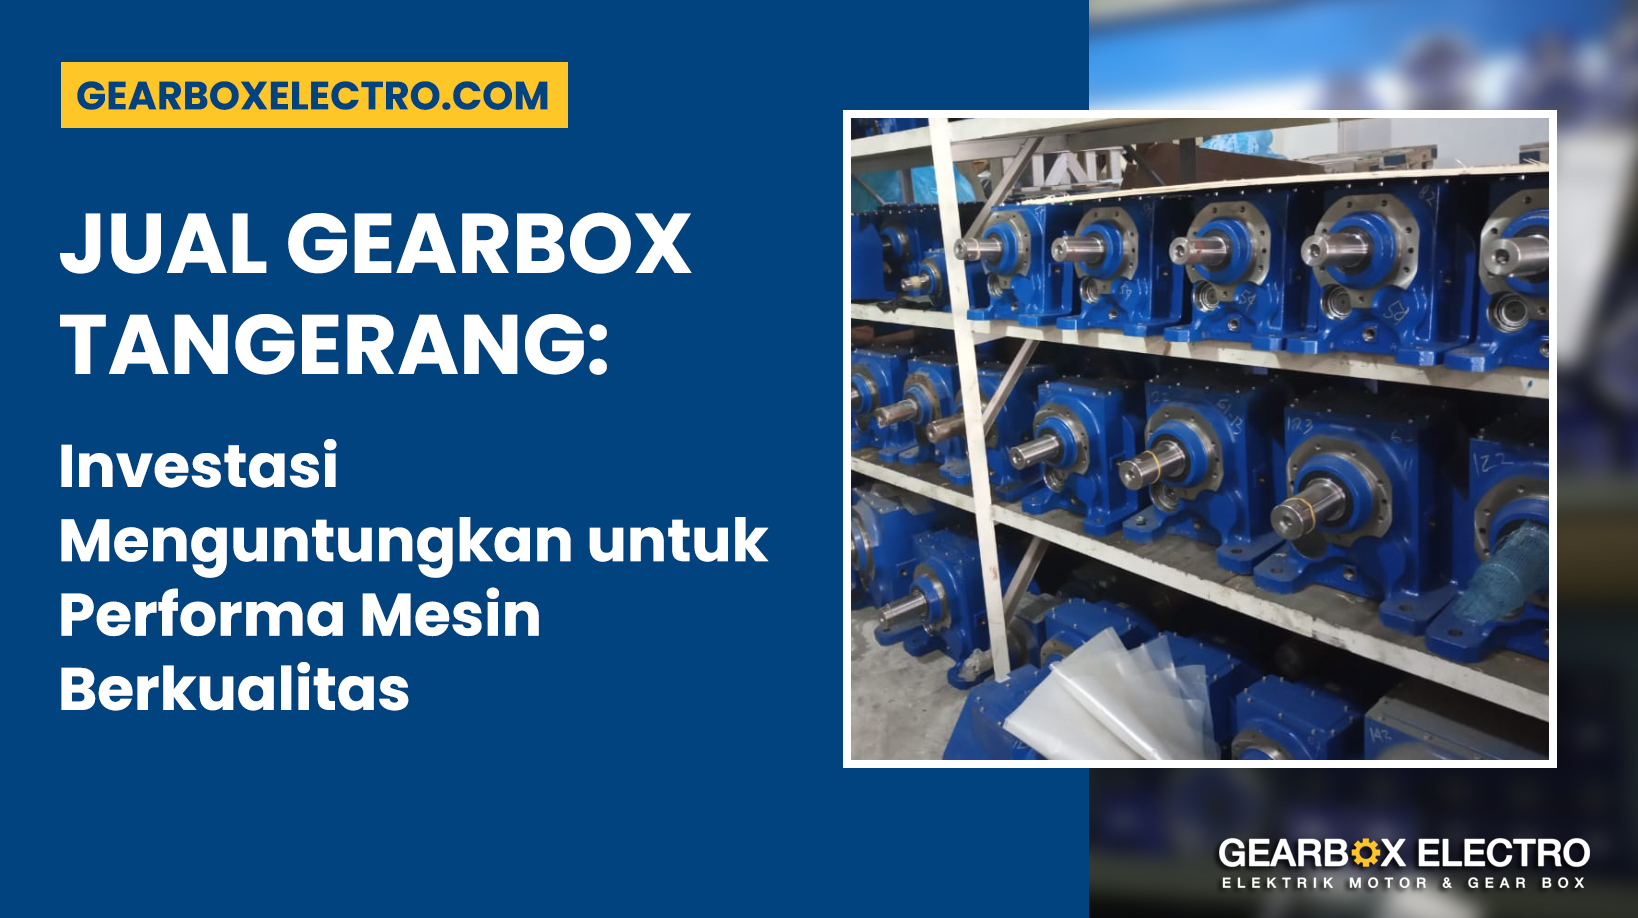 Jual Gearbox Tangerang: Investasi Menguntungkan untuk Performa Mesin Berkualitas